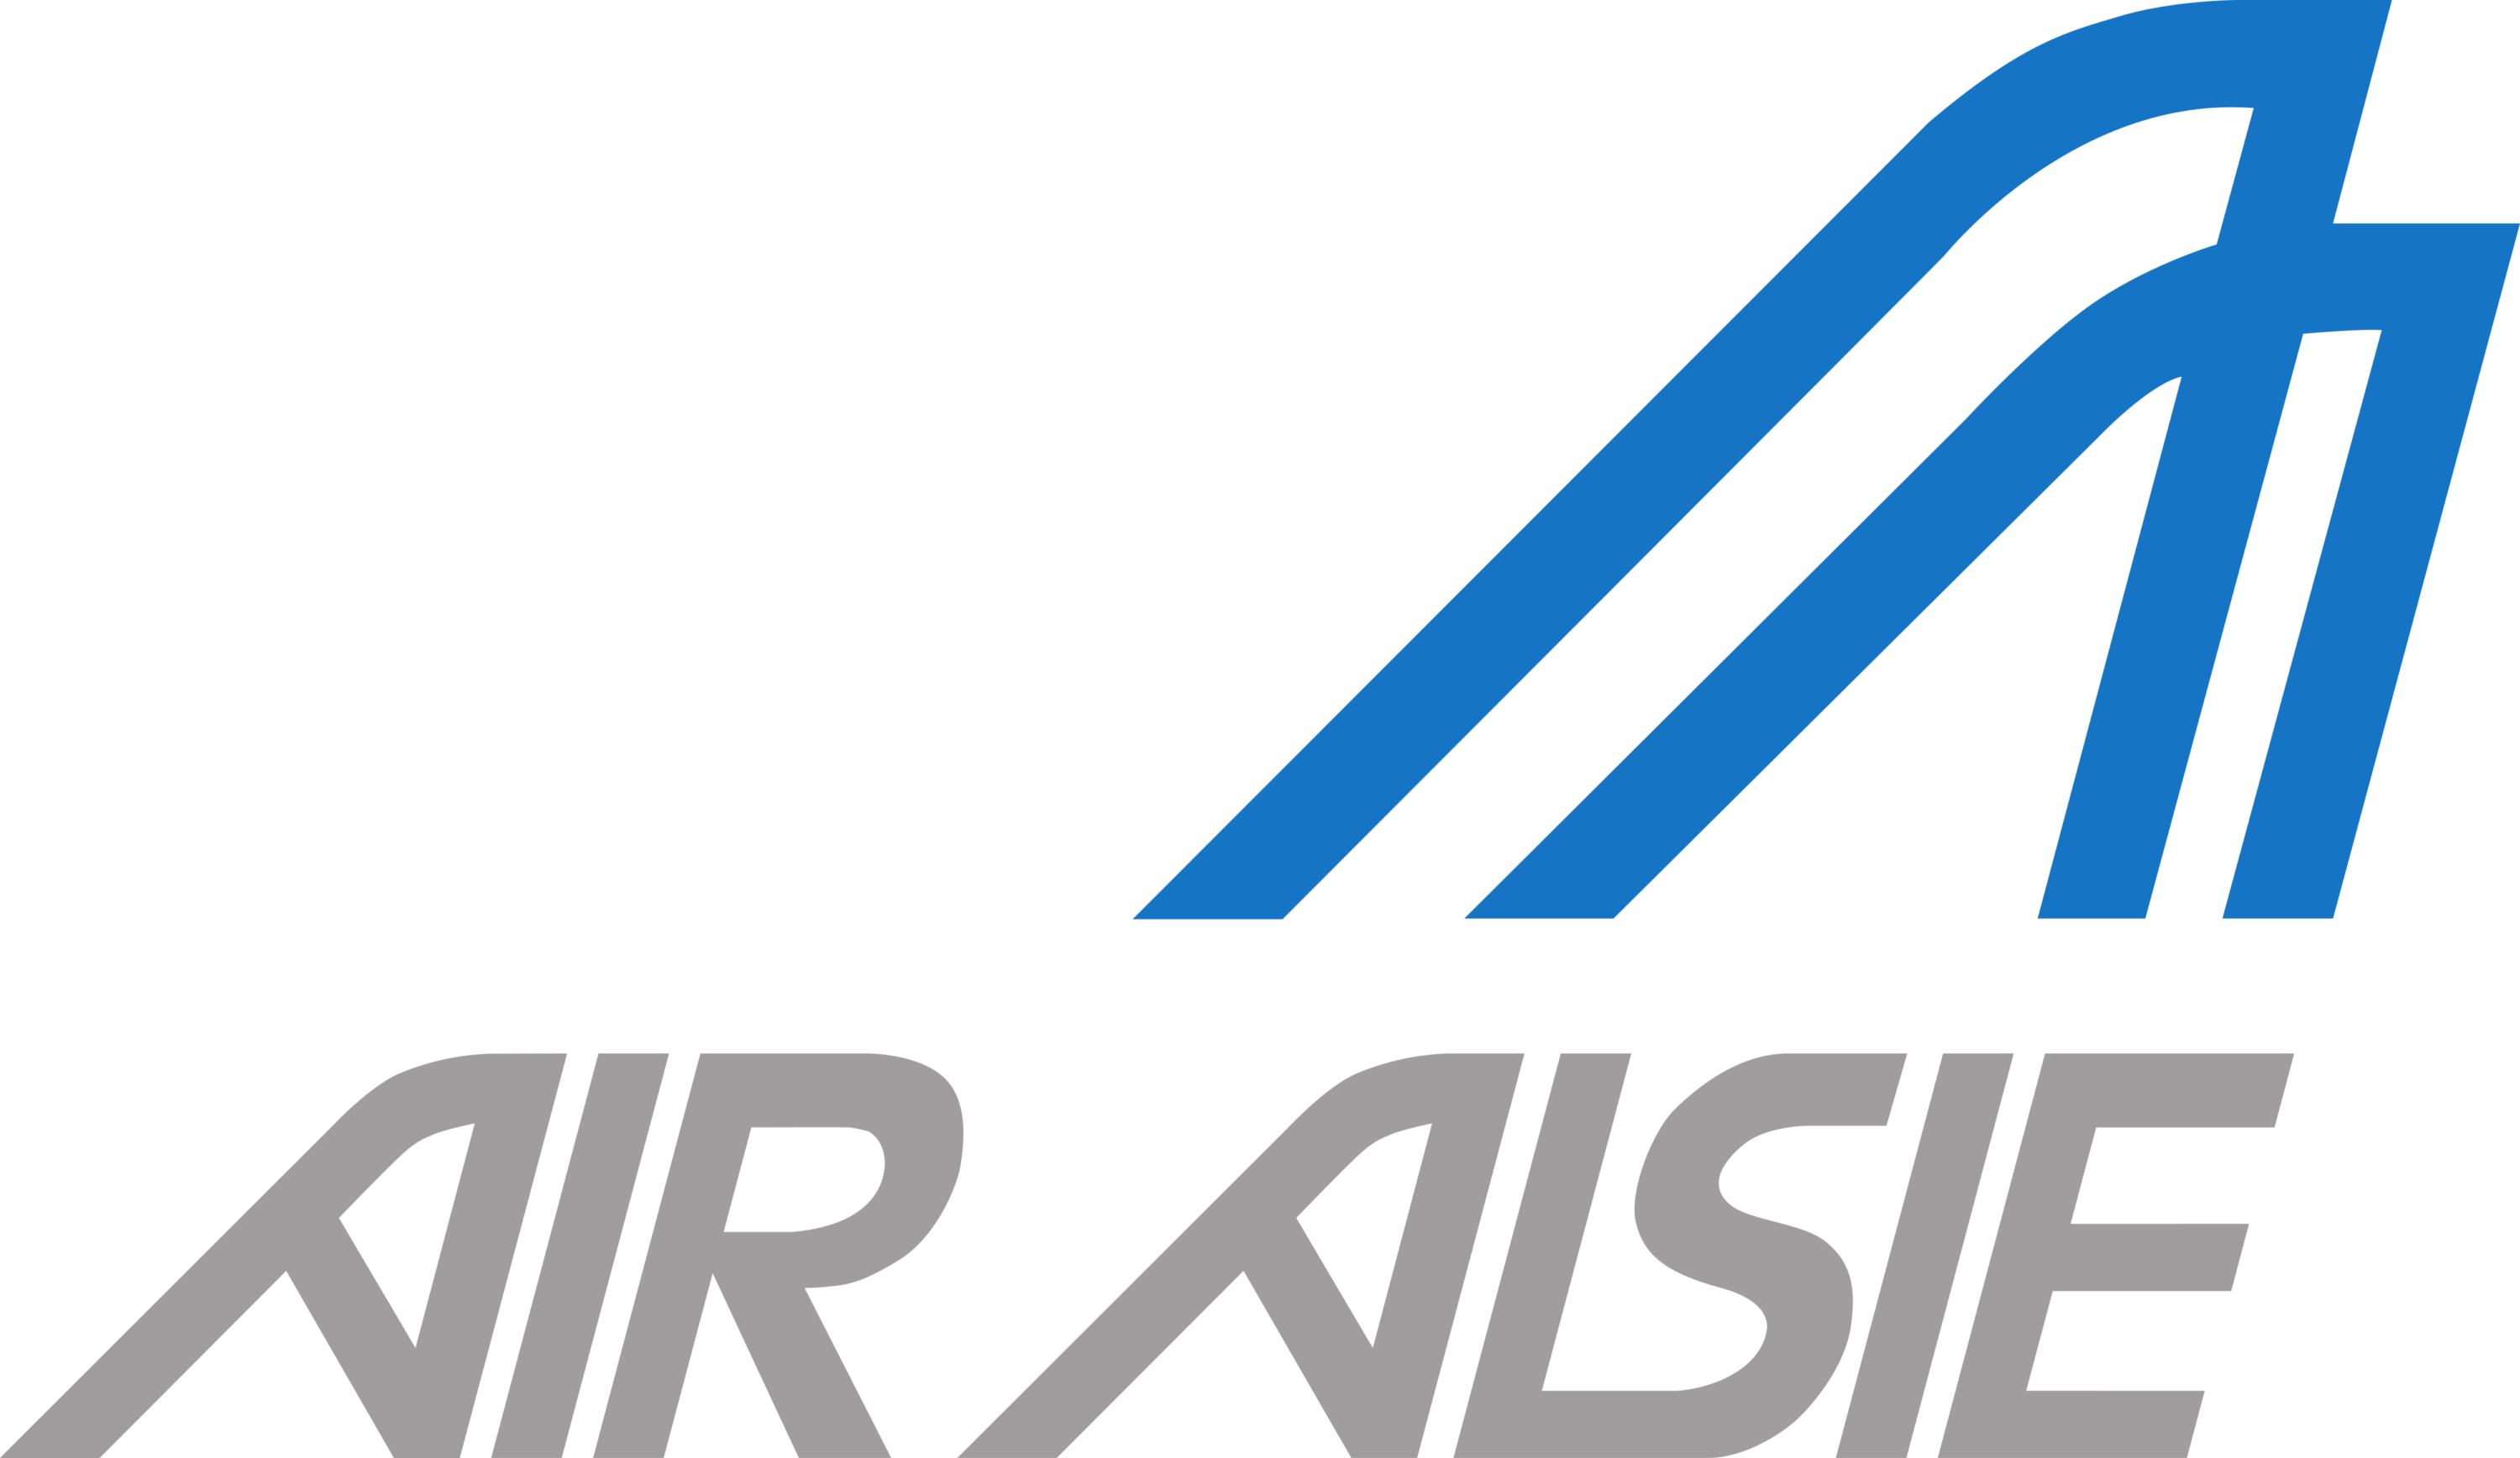 Air Alsie Logo